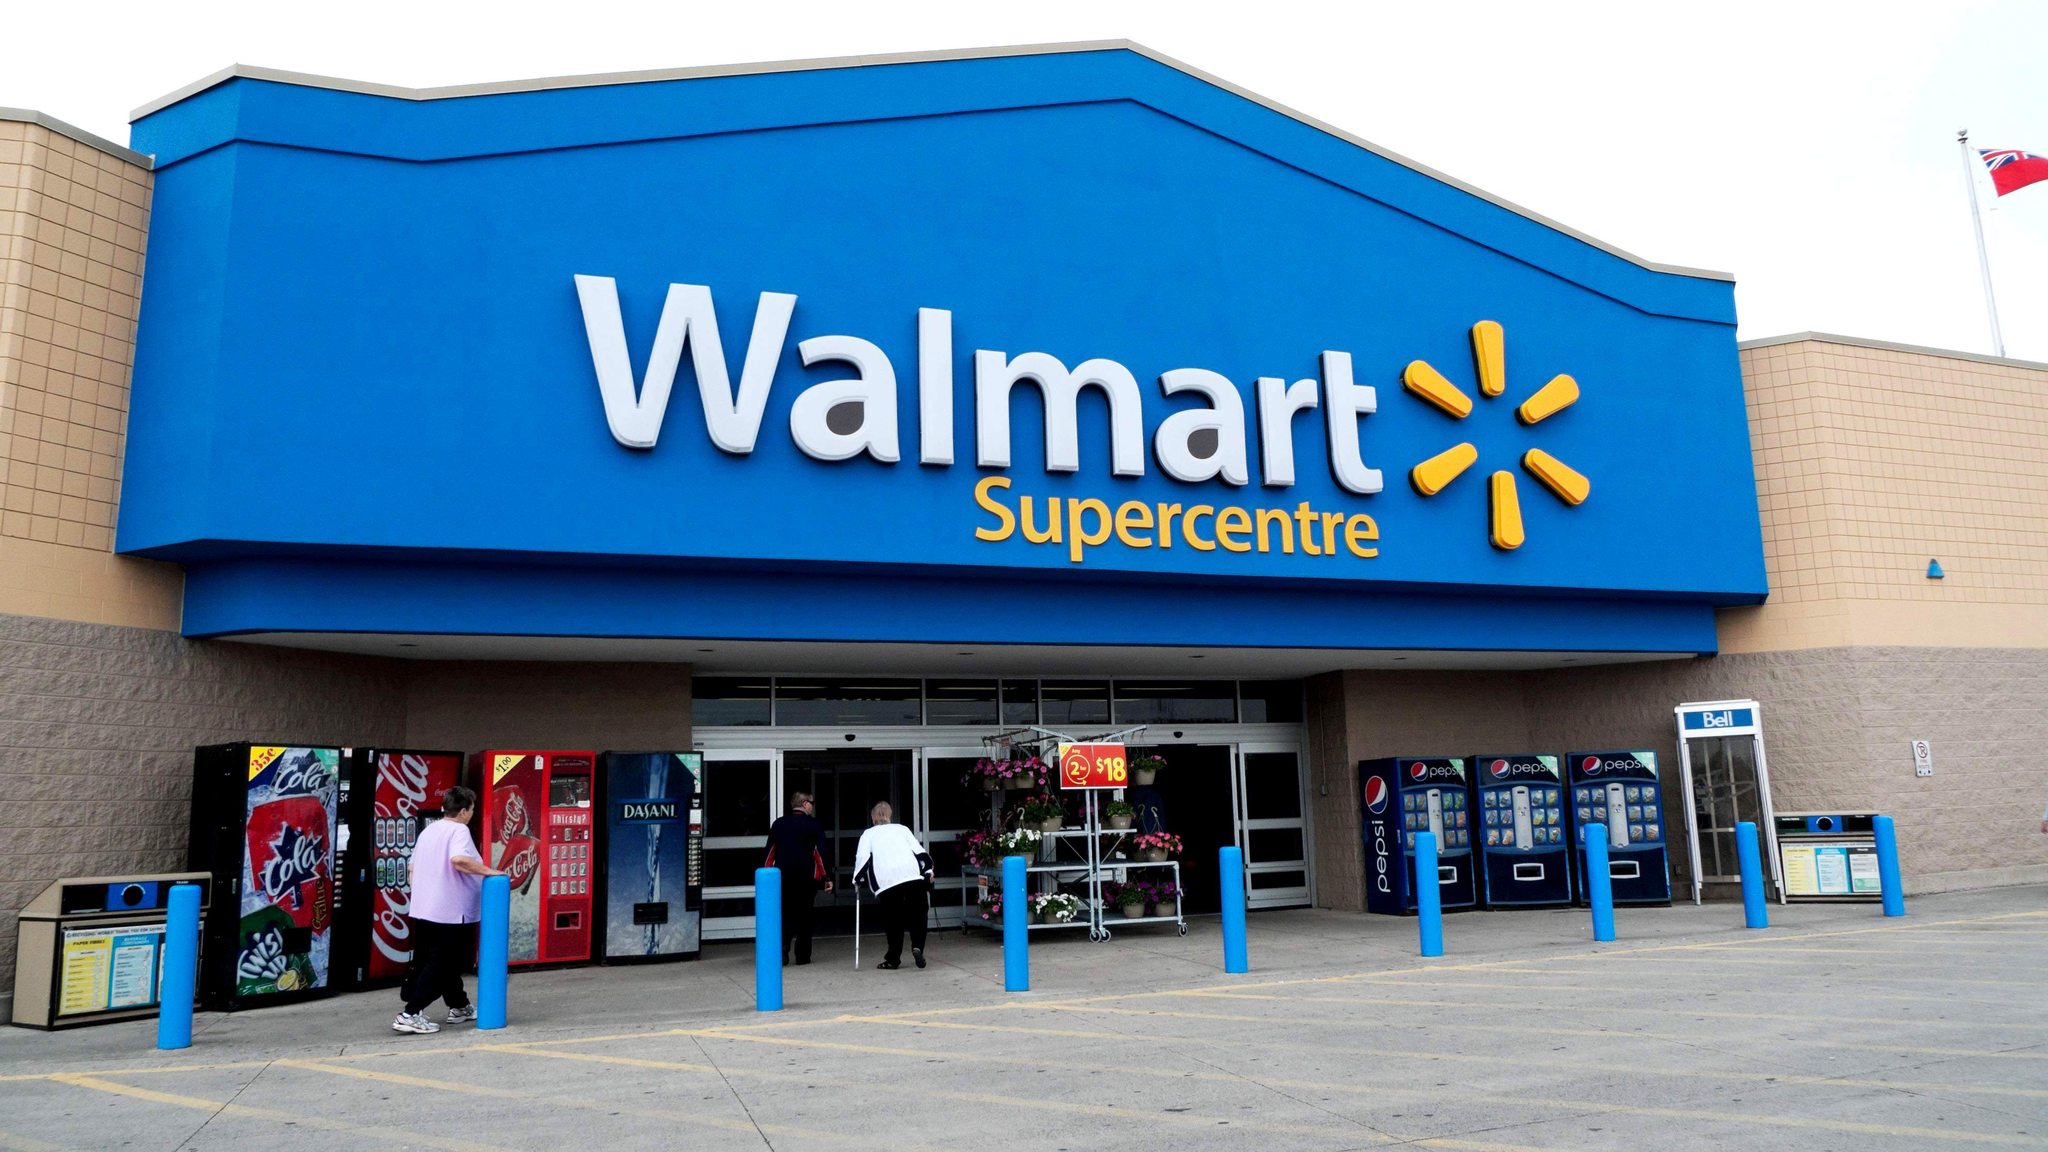 Walmart ve una menor caída de los beneficios este año porque descuentos estimulan la demanda